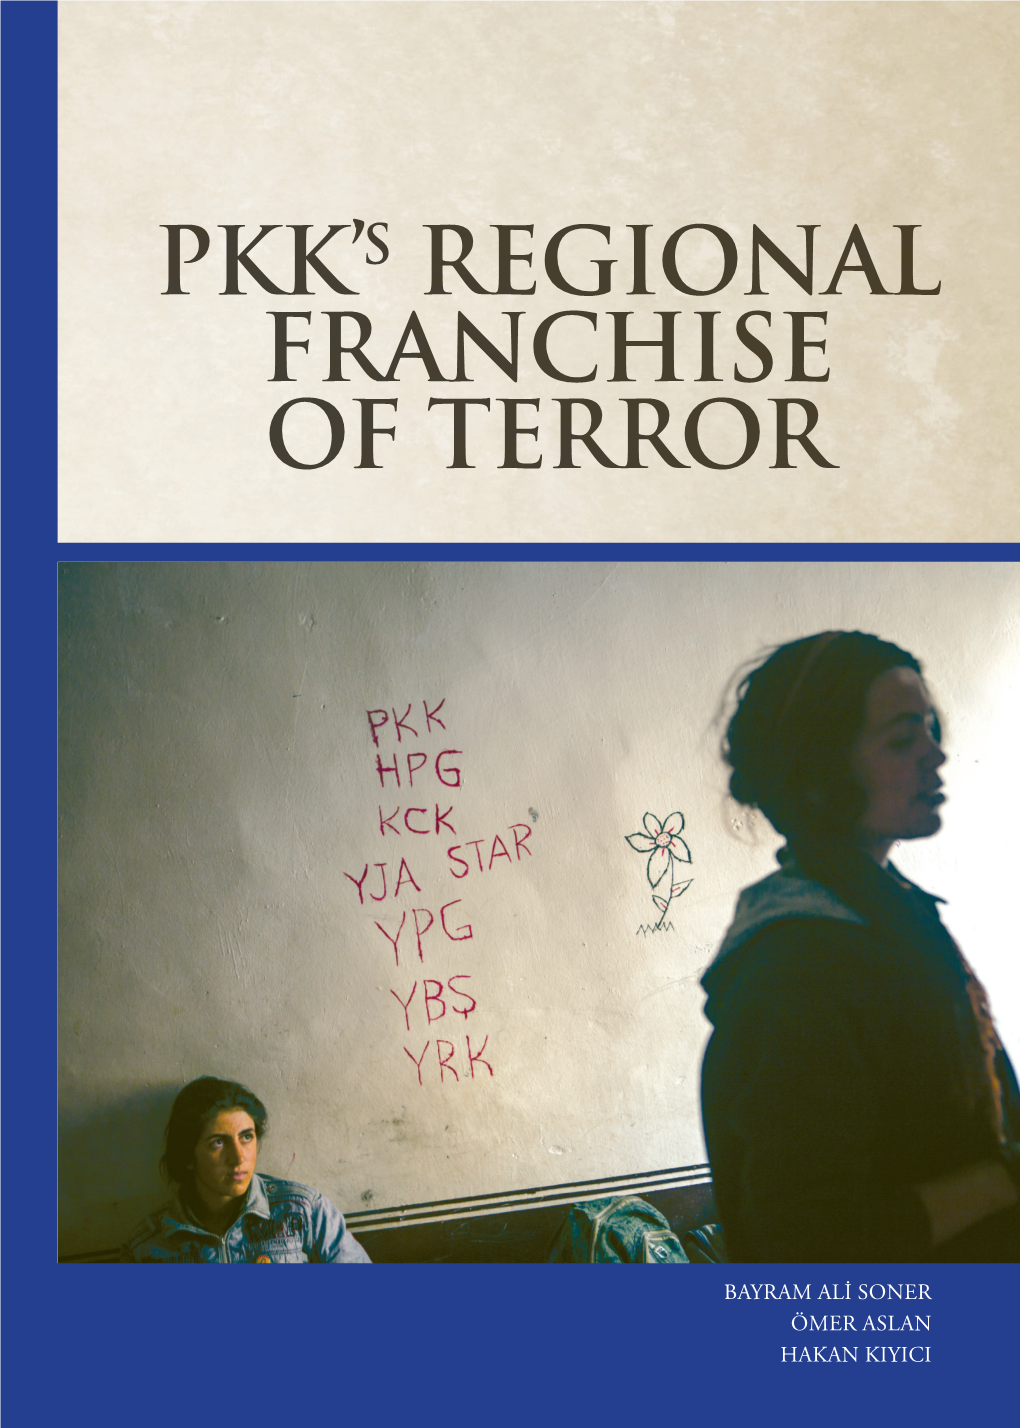 PKK's REGIONAL FRANCHISE of TERROR.Pdf